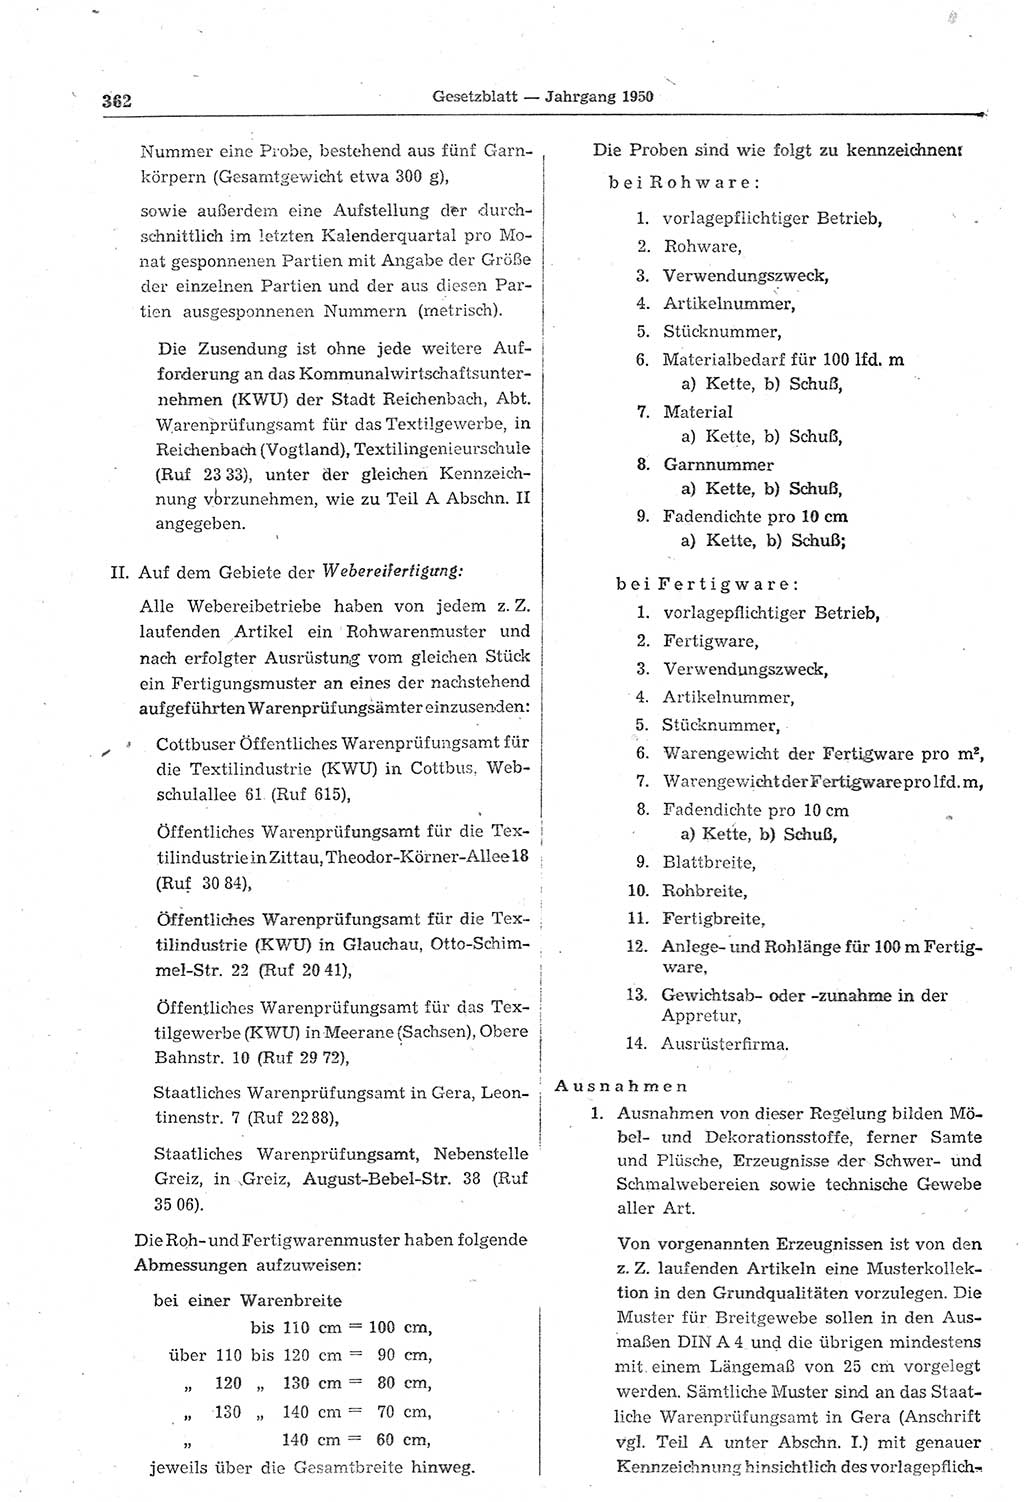 Gesetzblatt (GBl.) der Deutschen Demokratischen Republik (DDR) 1950, Seite 362 (GBl. DDR 1950, S. 362)